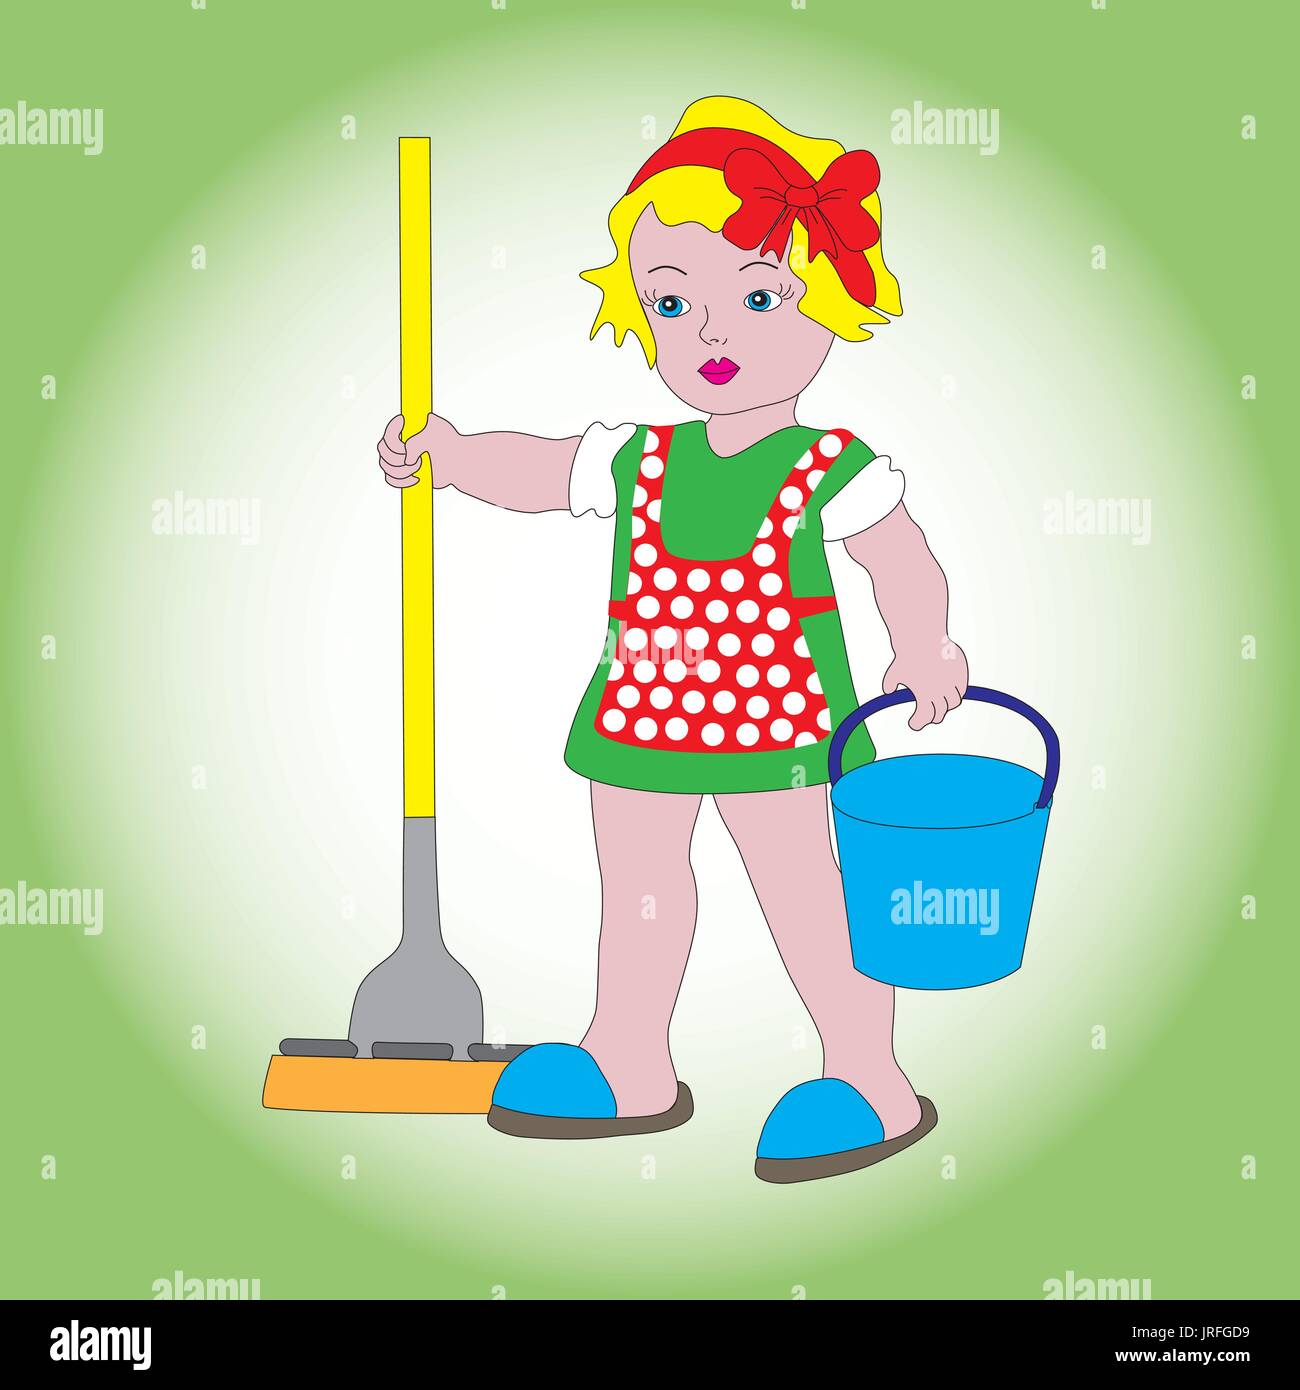 Un po' di dolce ragazza con una benna e un mop per pulizia. Un simbolo di pulizia, ordine e pulizia. Illustrazione Vettoriale